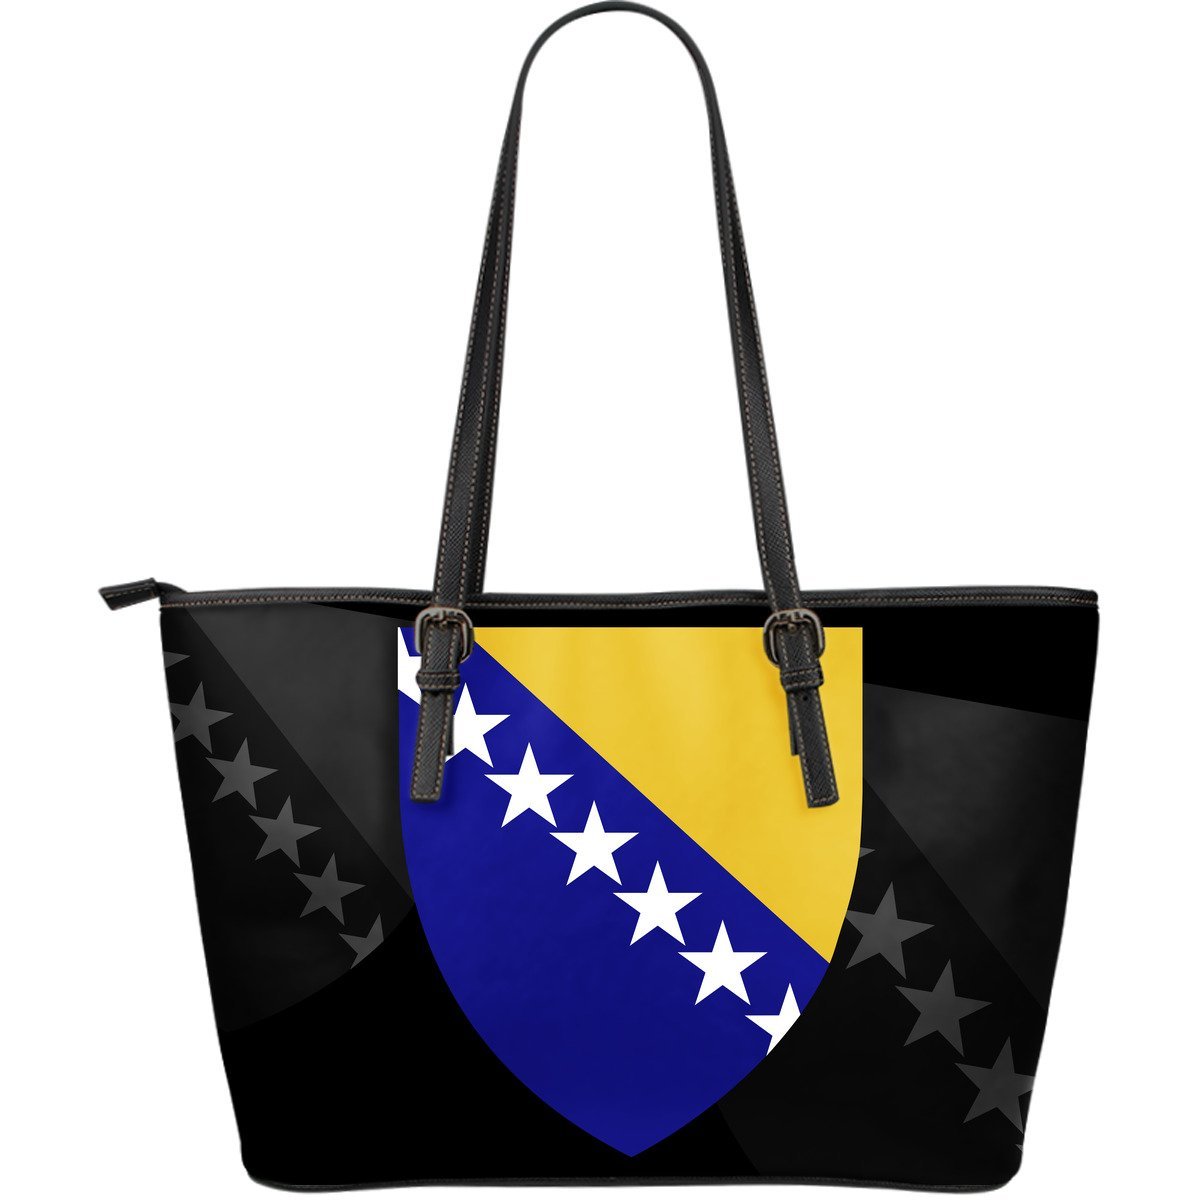 bosnia-and-herzegovina-leather-tote-bag-large-size